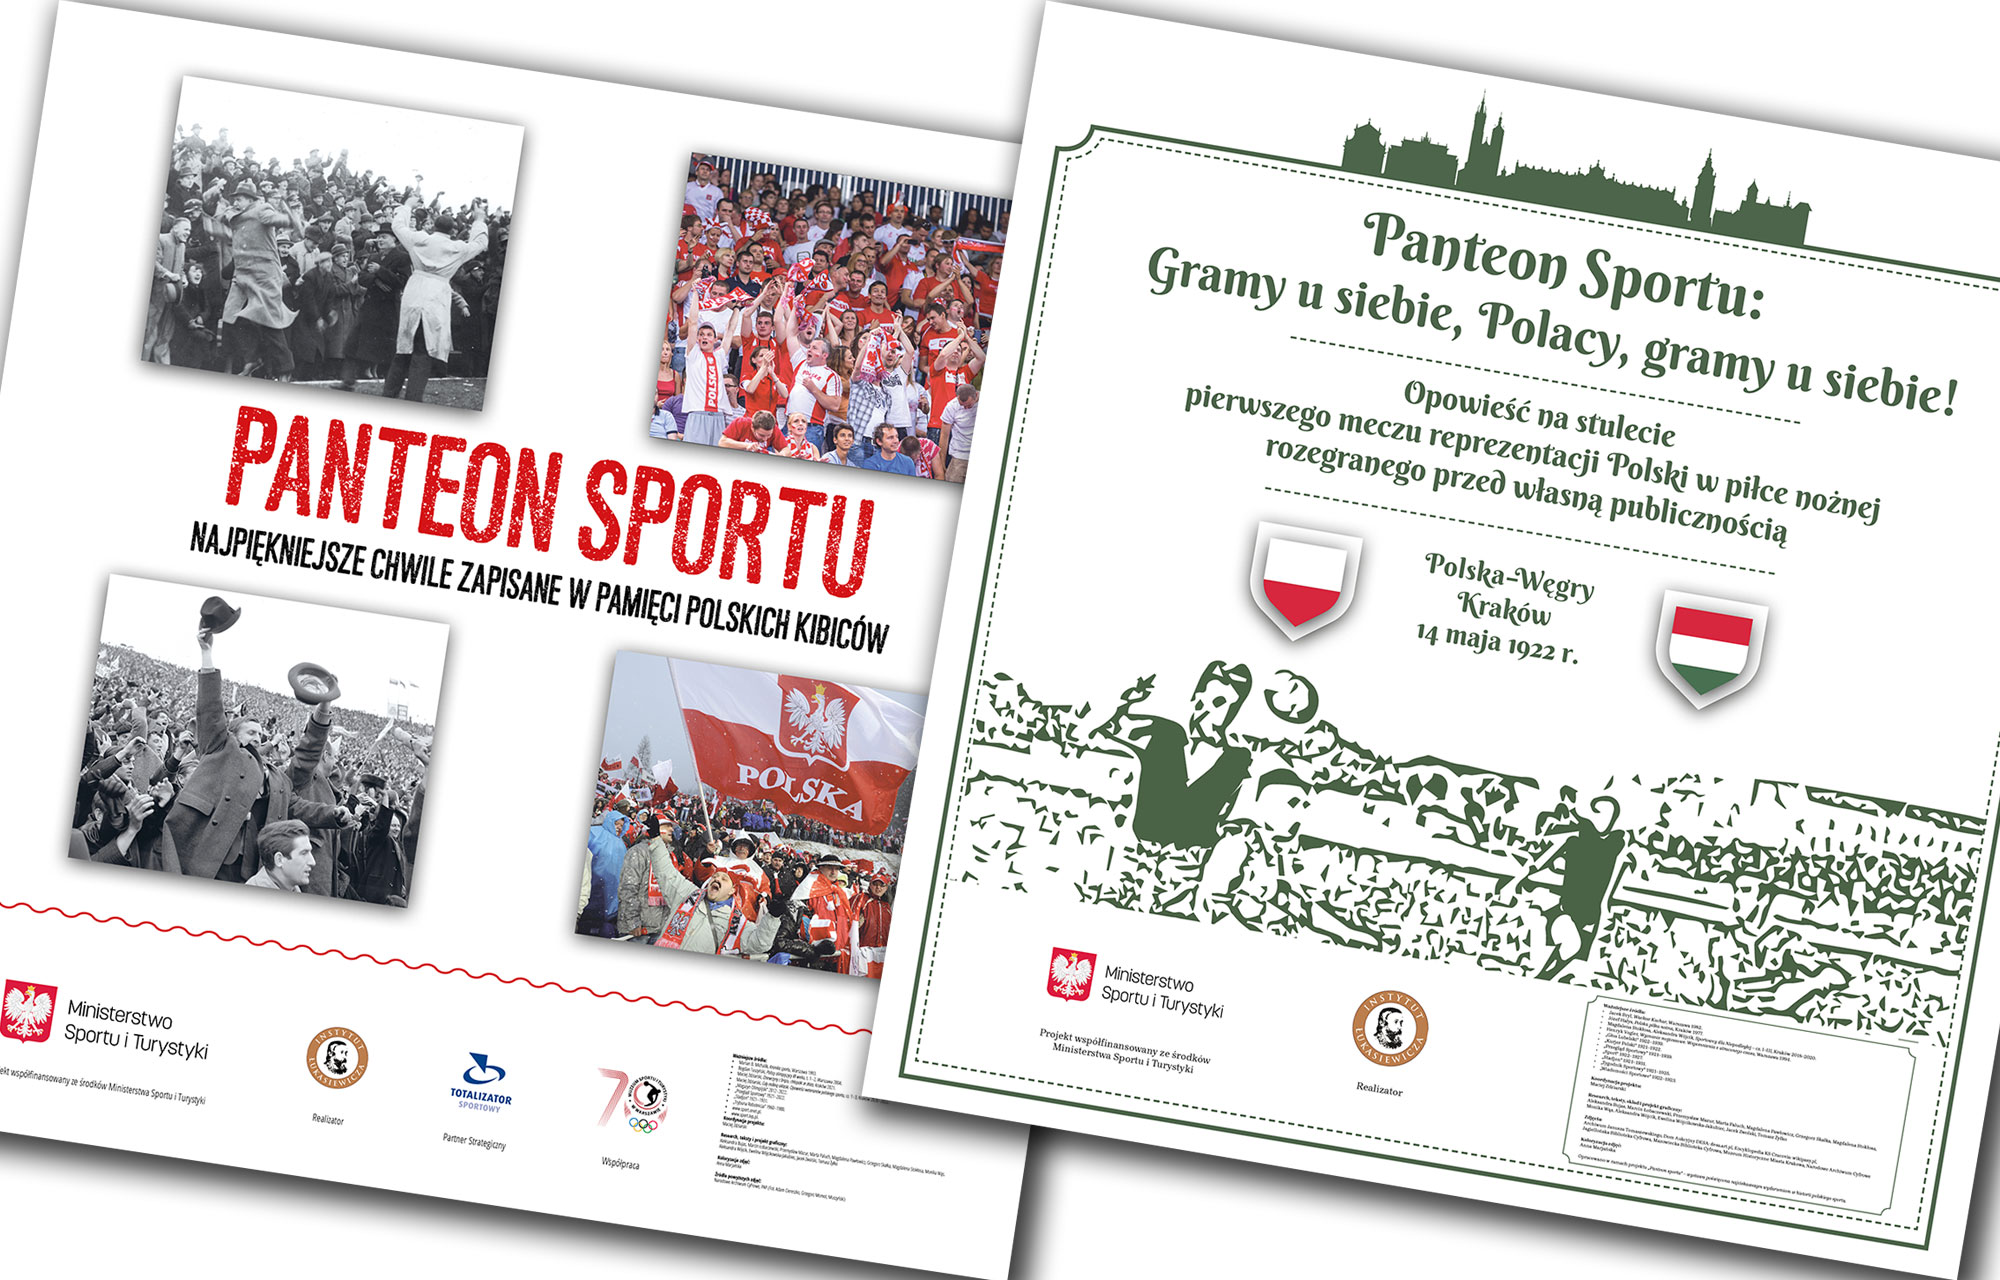 Panteon sportu – zapowiedź nowej wystawy o niezapomnianych momentach w historii polskiego sportu